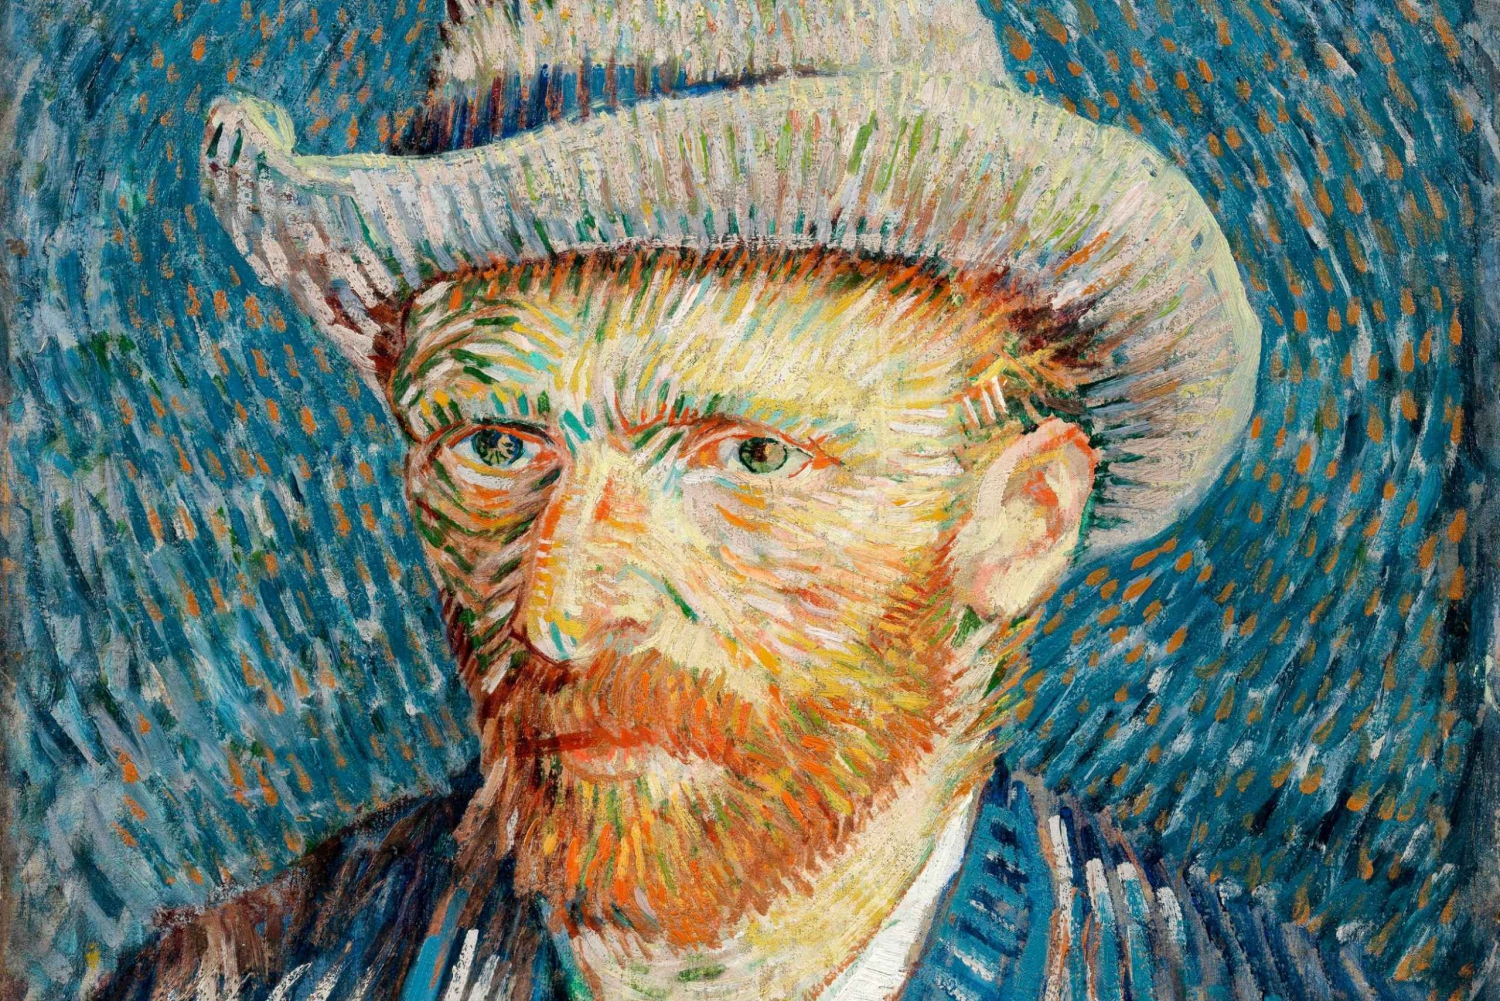 Museo-Van-Gogh-Explora-las-obras-maestras-de-Vincent-van-Gogh